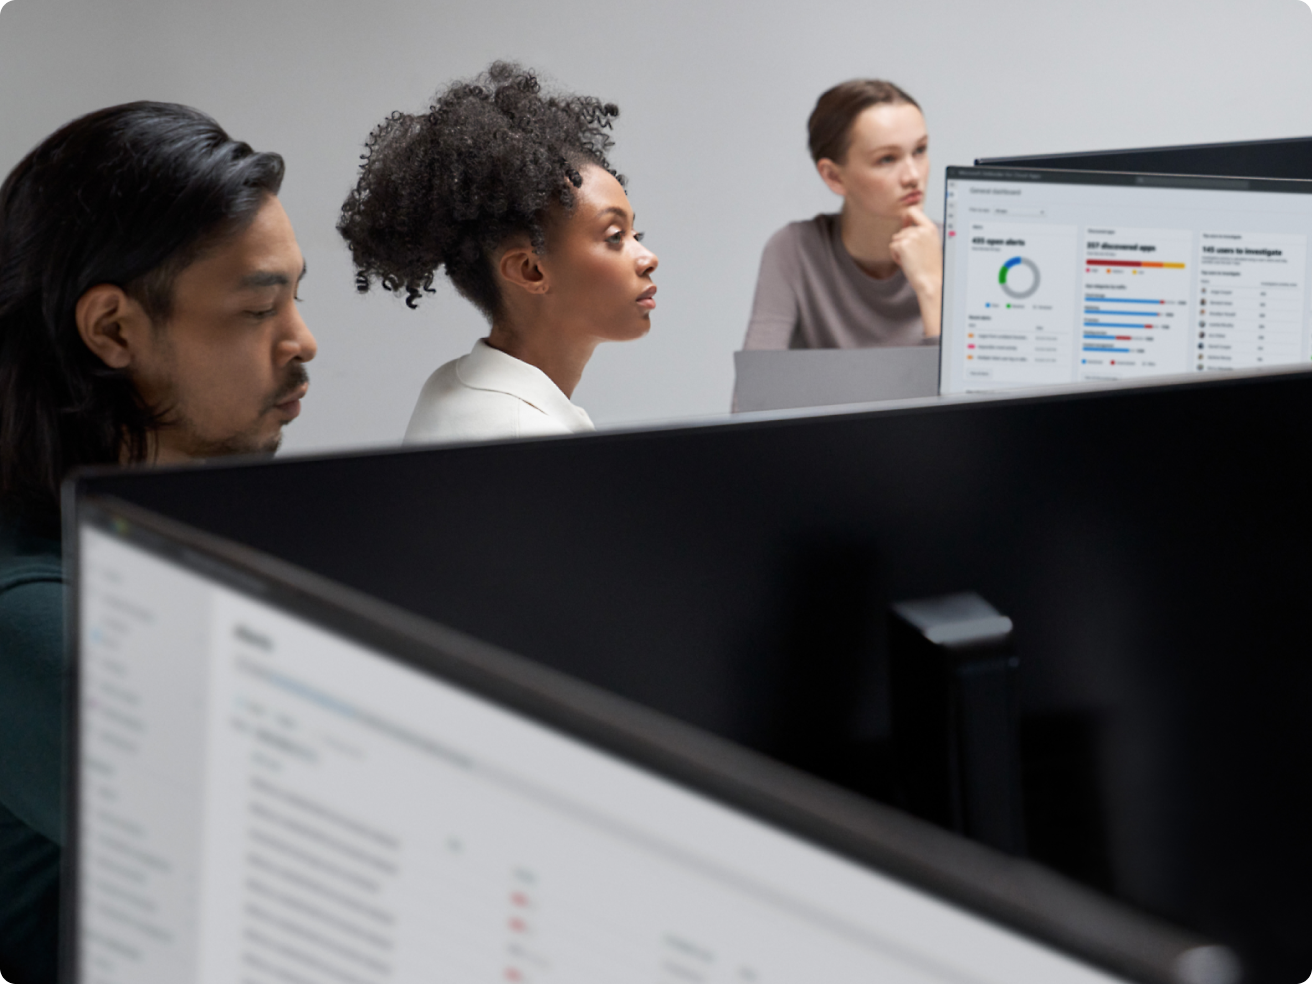 Drei Büromitarbeiter konzentrierten sich in einer modernen Büroumgebung auf Computerbildschirme, auf denen Diagramme und Daten angezeigt wurden.